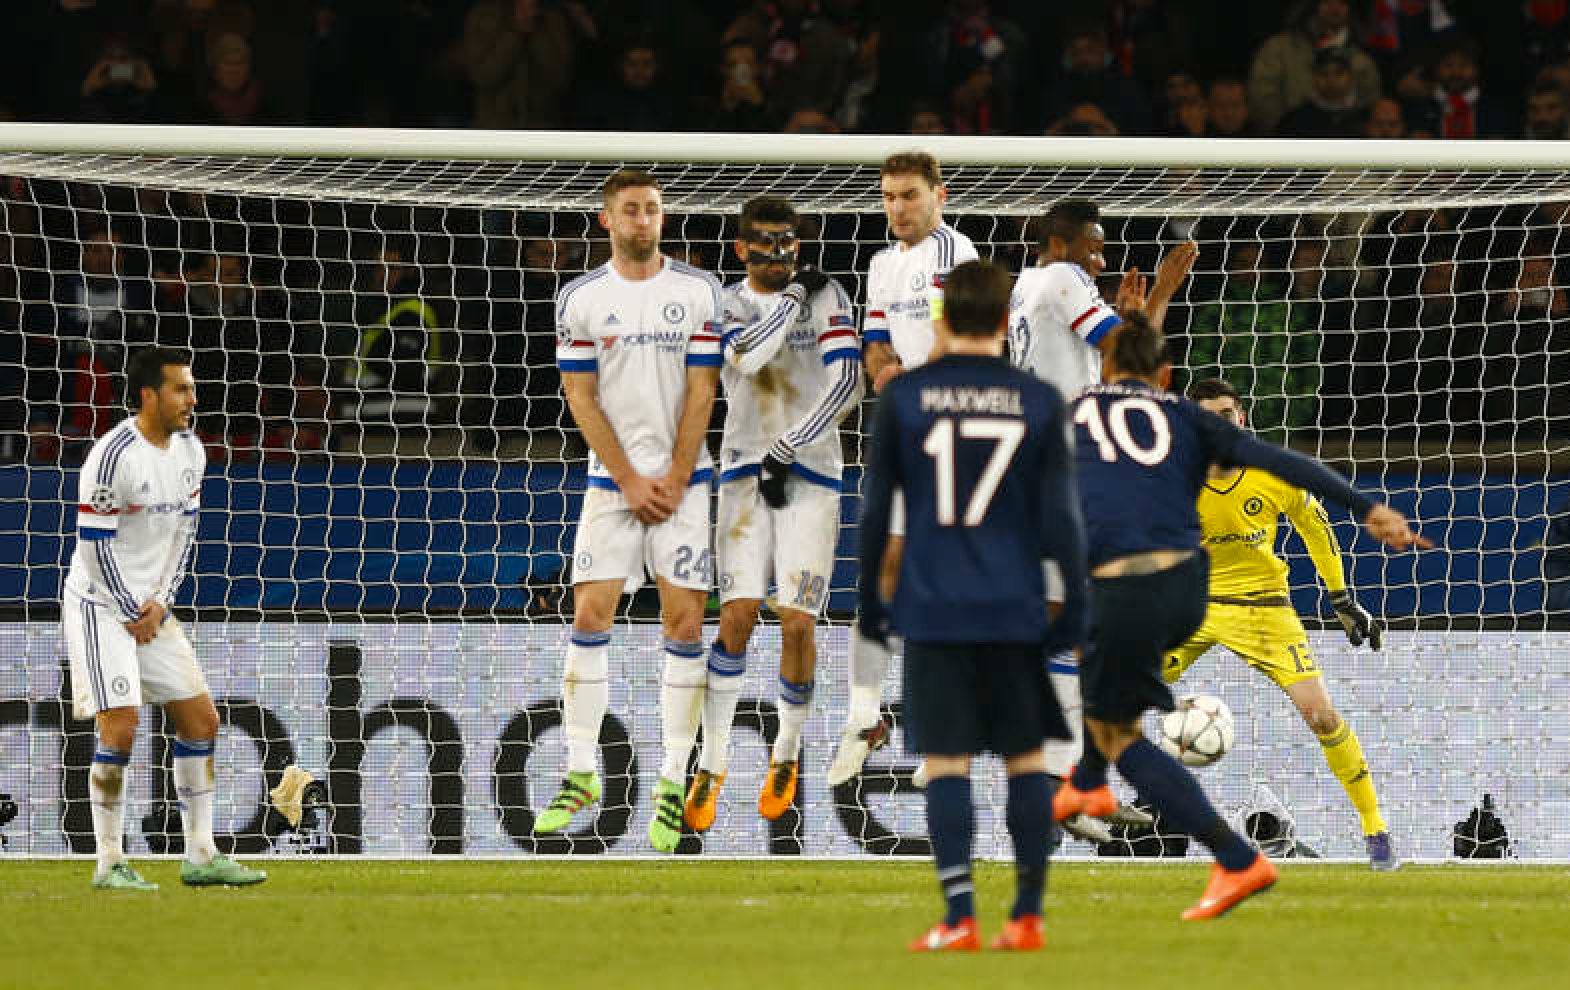 Zlatans frispark tar på Mikel och går in i mål. Foto: AP/Francois Mori